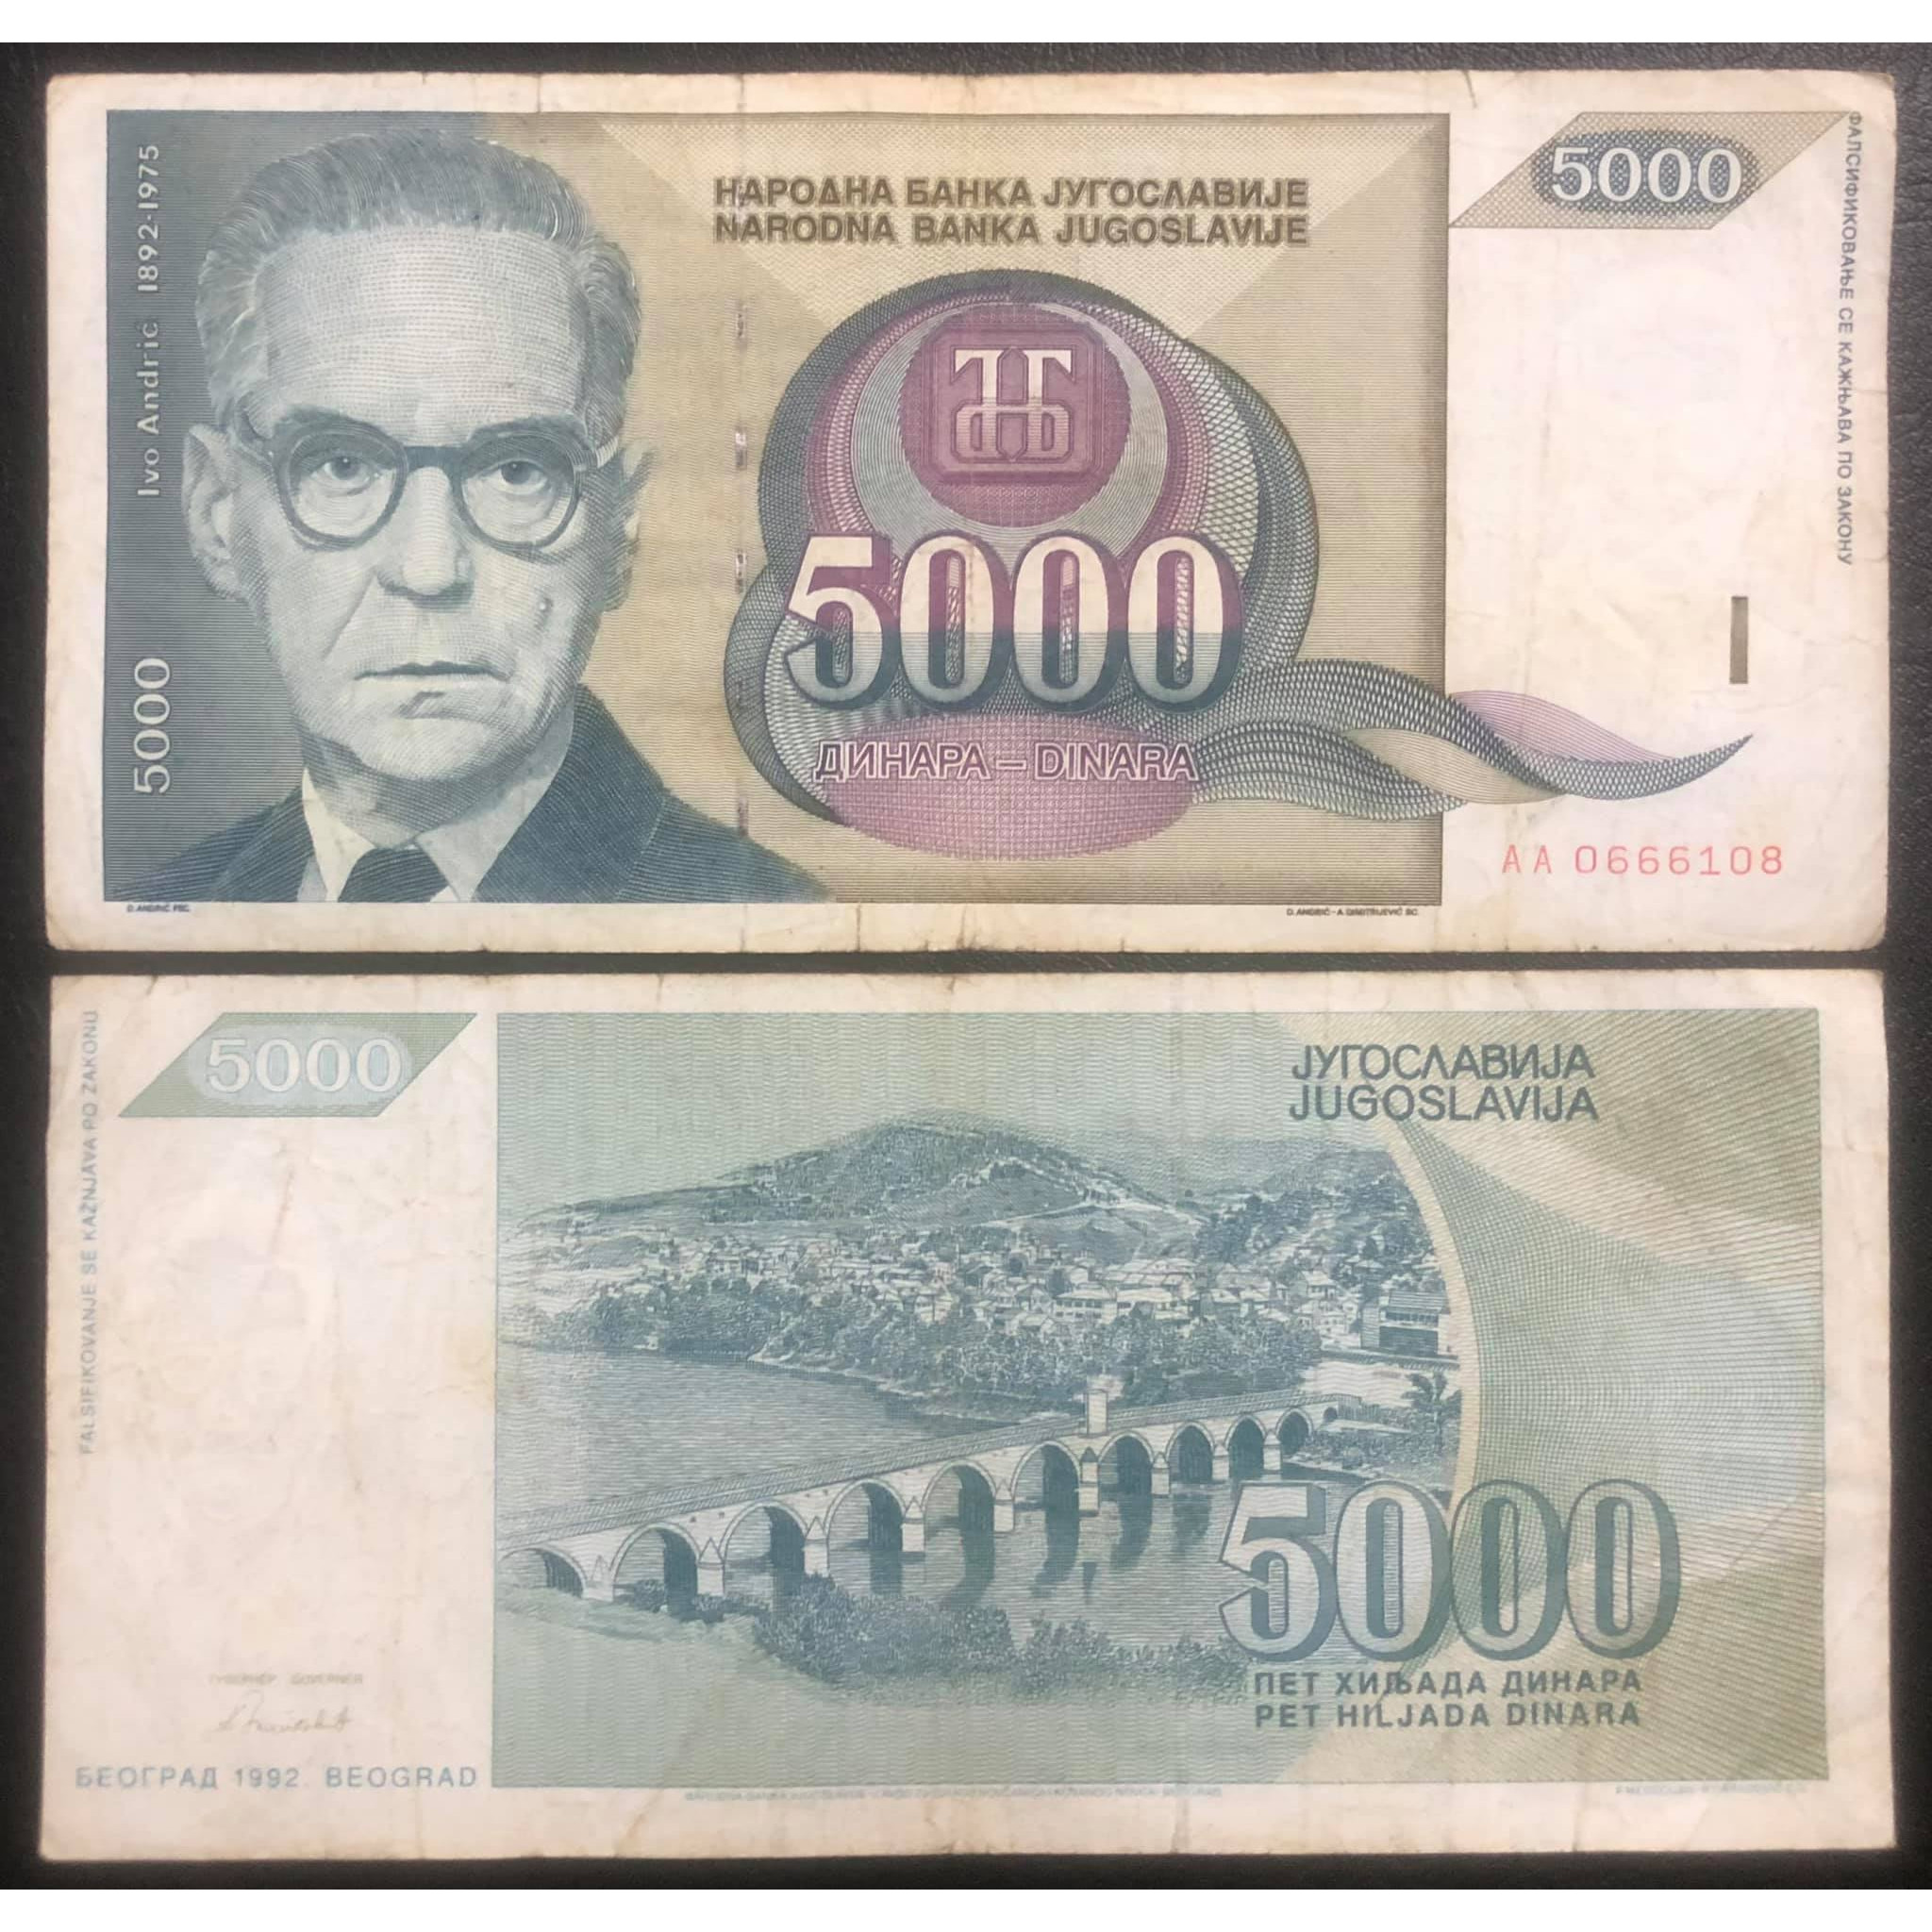 Tiền xưa Nam Tư 5000 dinara, quốc gia không còn tồn tại